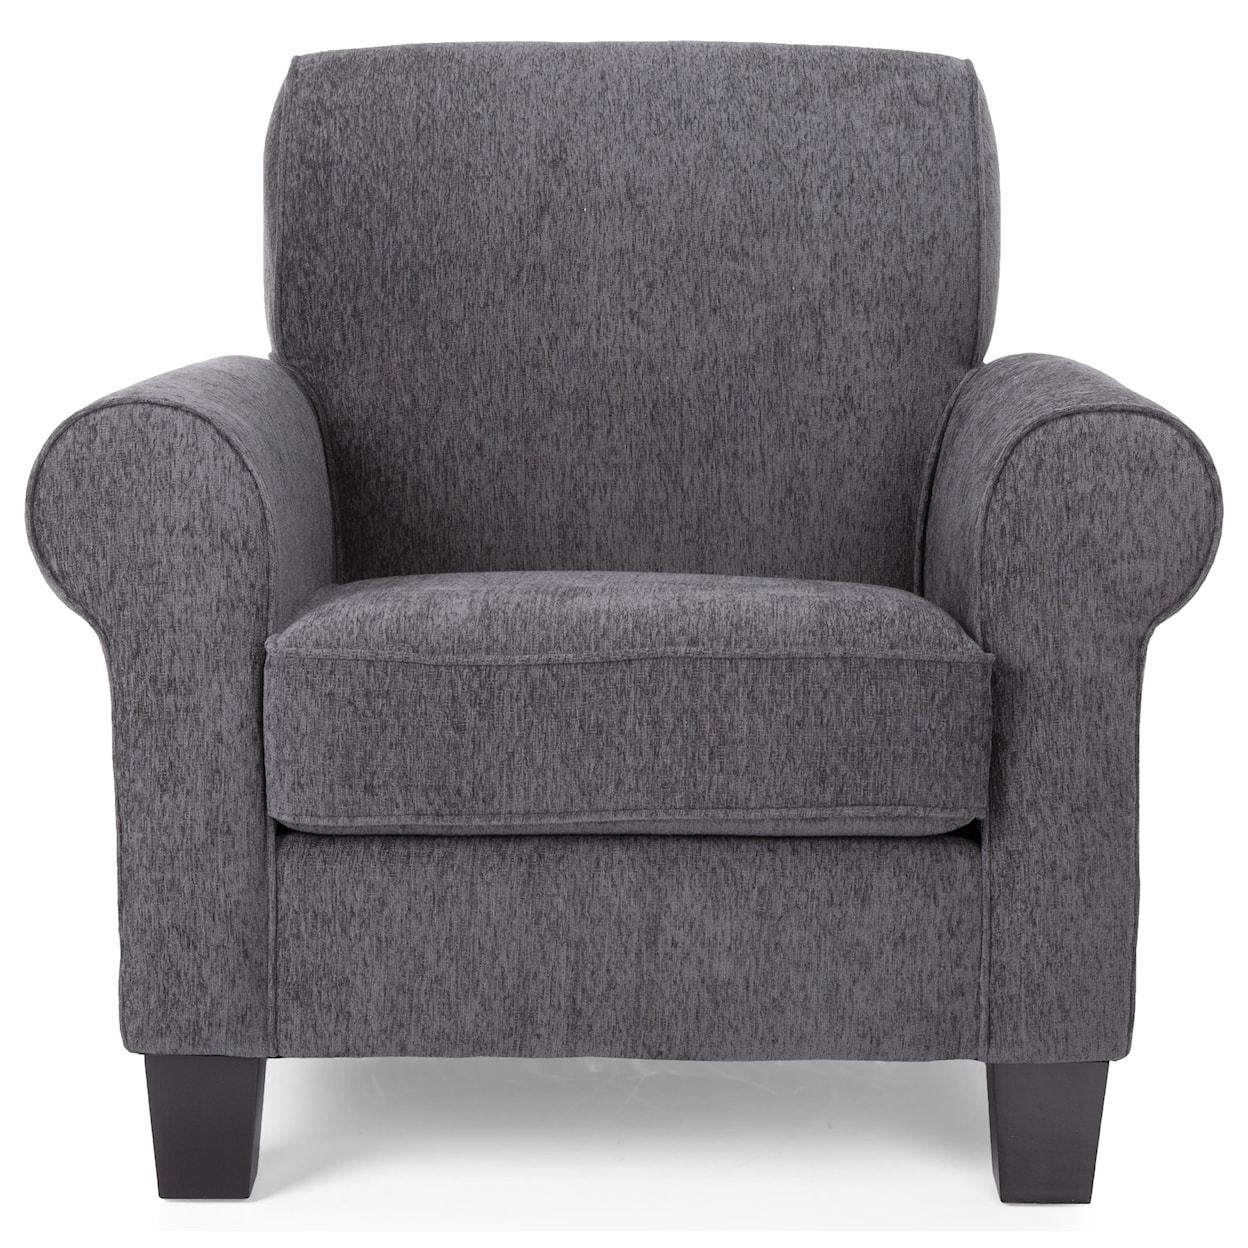 Decor-Rest Camilla Chair